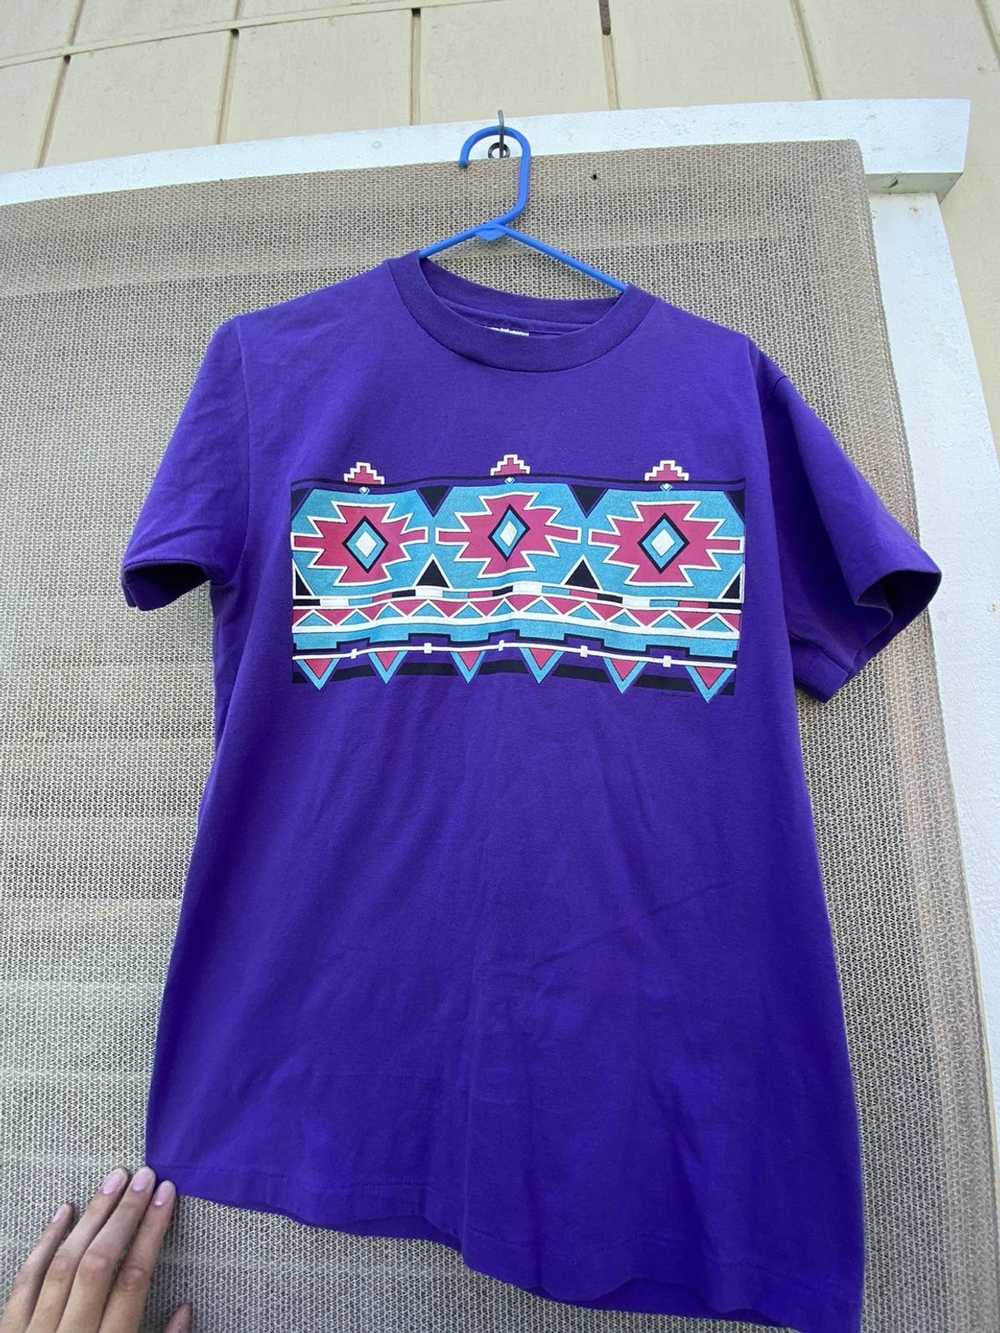 Vintage Vintage Single Stitch Aztec Print T shirt. - image 1